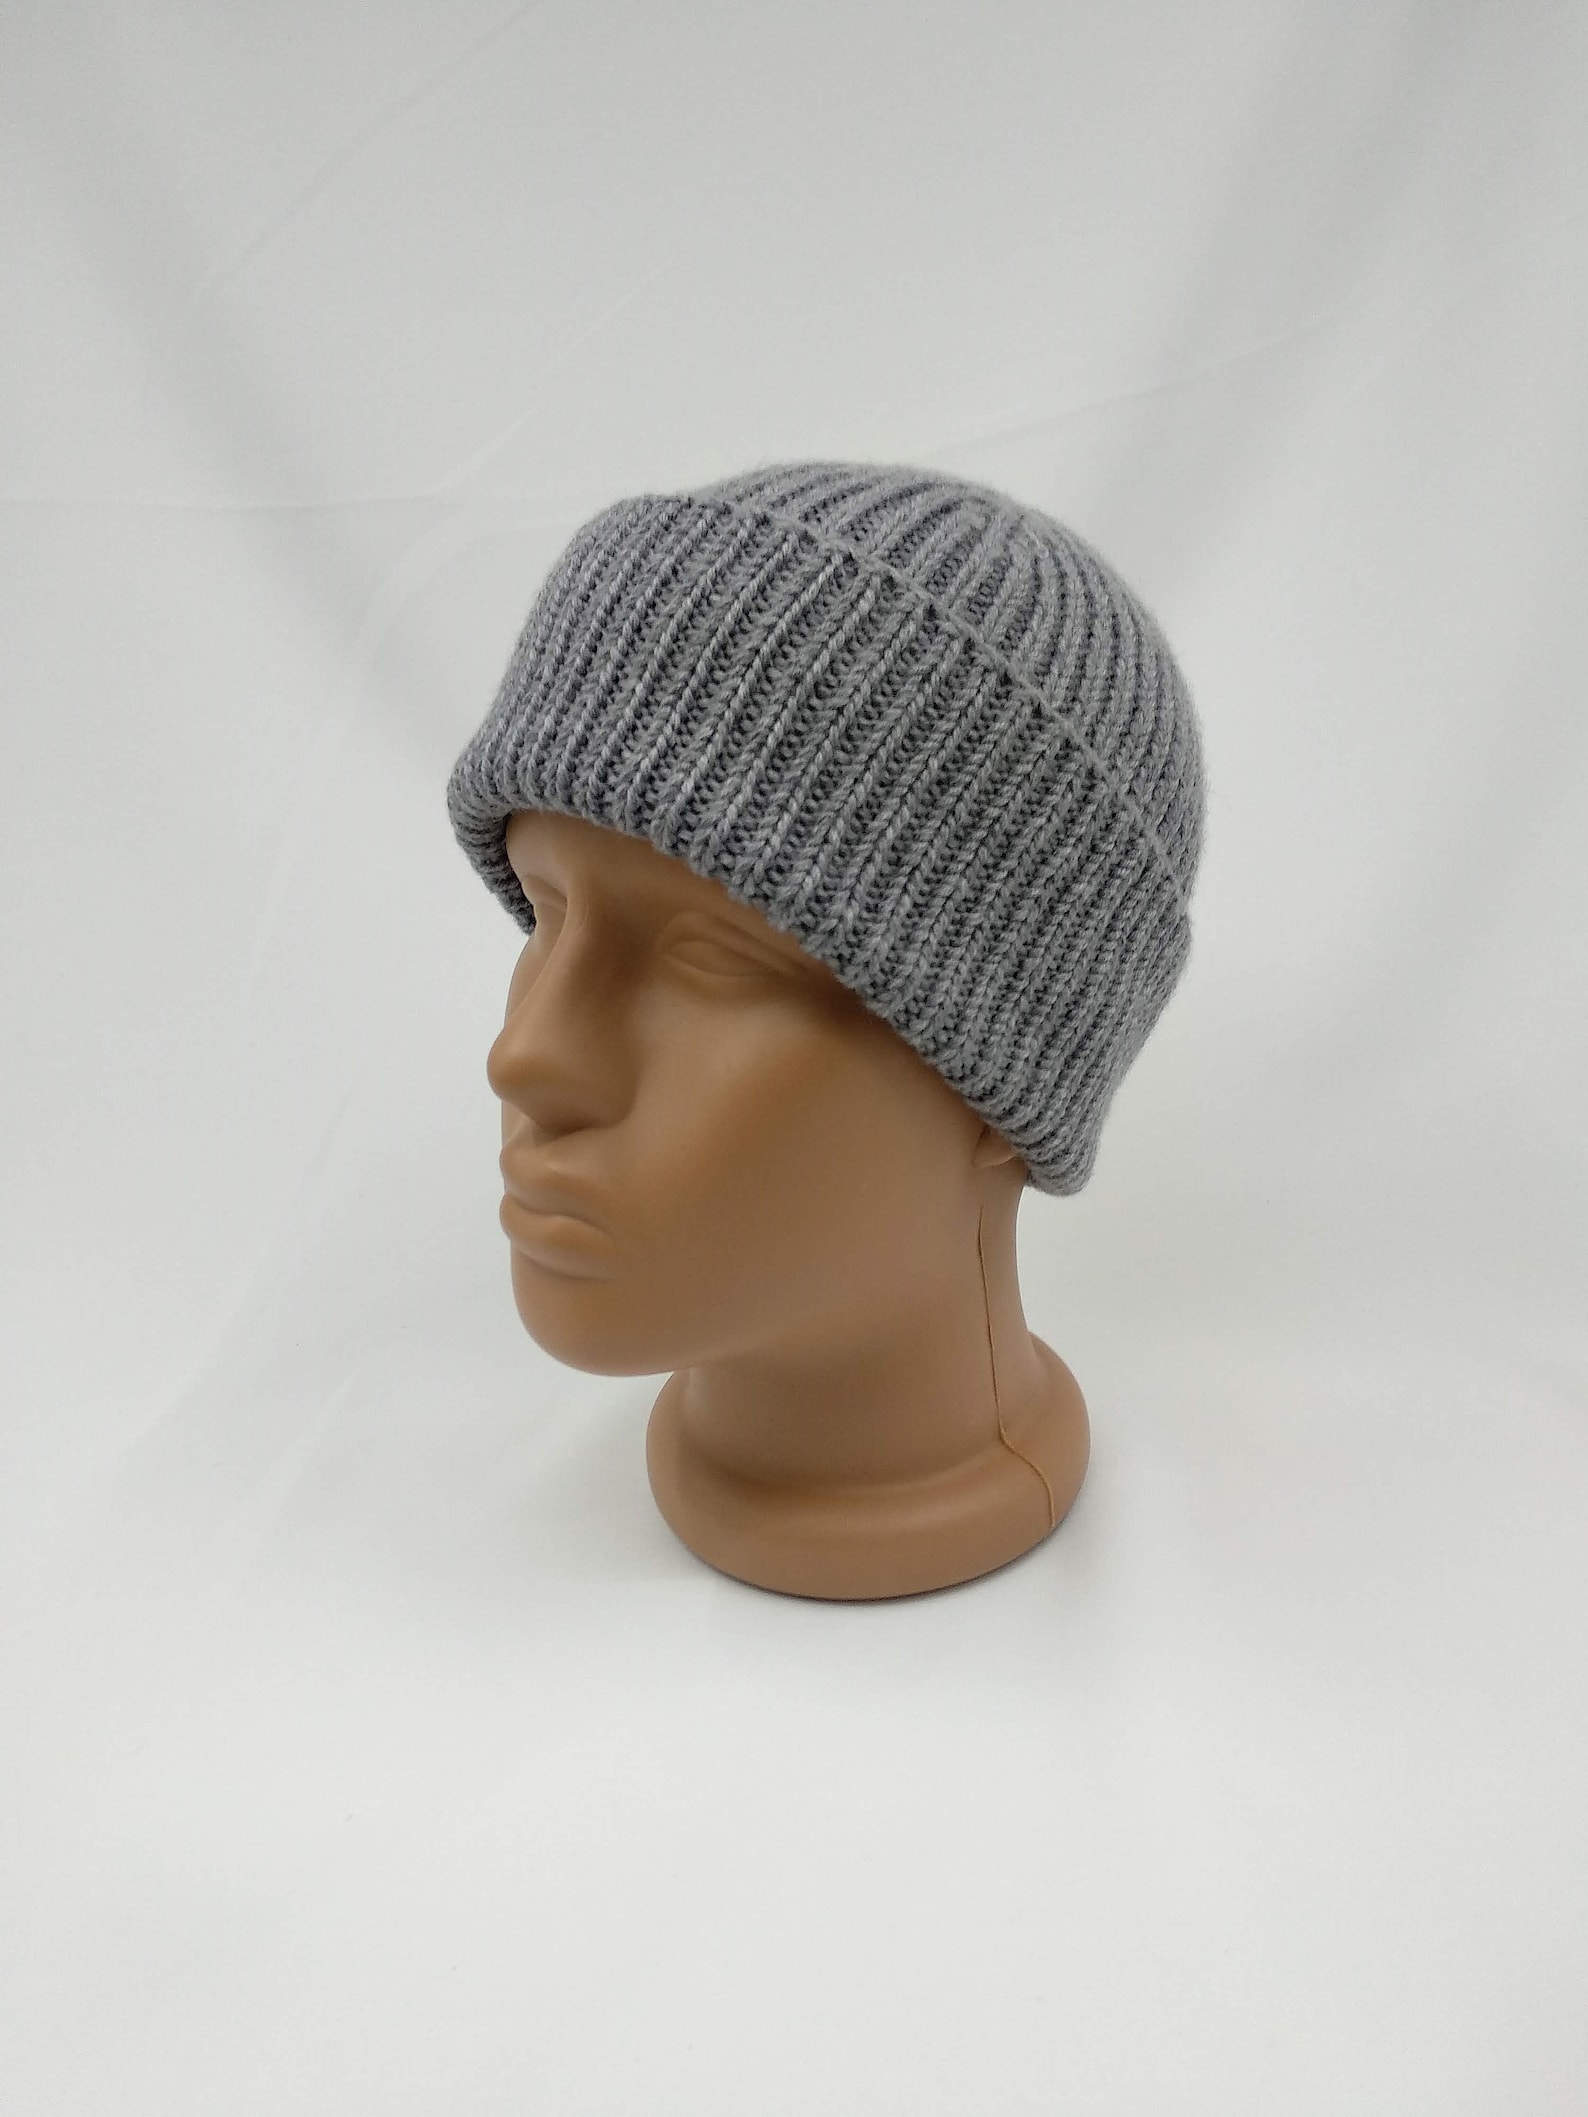 Warm Winter Mens Hat Boys Watch Cap Knit Merino Wool Hat | Etsy